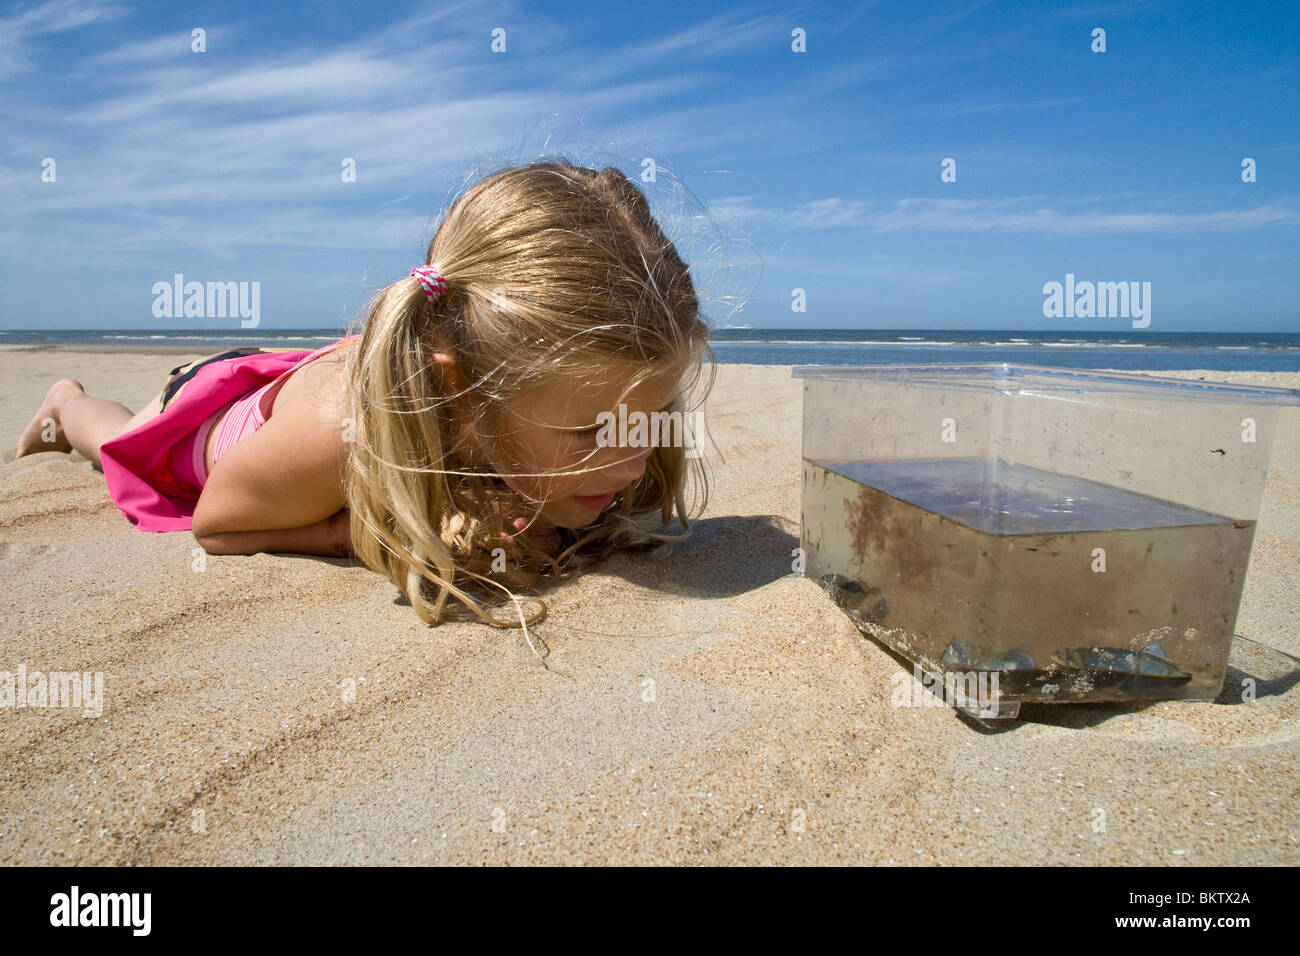 Meisje met garnalen, mosselen en ander zeeleven Stock Photo